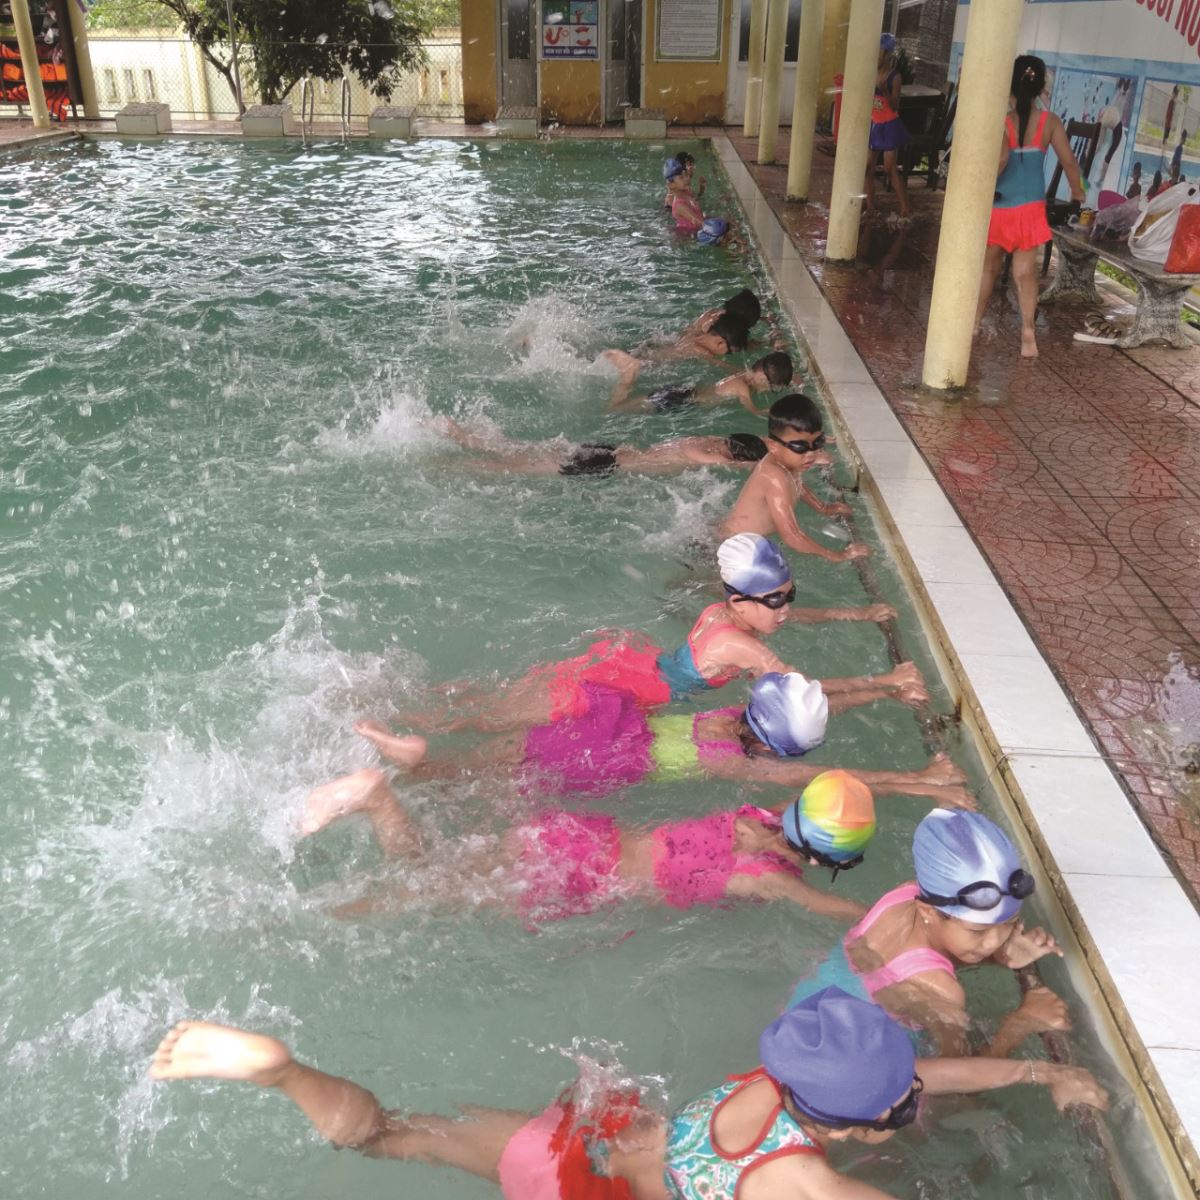 Những lớp dạy bơi ngày hè không chỉ giúp trẻ em nâng cao sức khỏe, rèn luyện các kỹ năng phòng tránh đuối nước mà còn là hoạt động thể thao mang nhiều ý nghĩa, là sân chơi an toàn, bổ ích cho các em trong ngày hè.